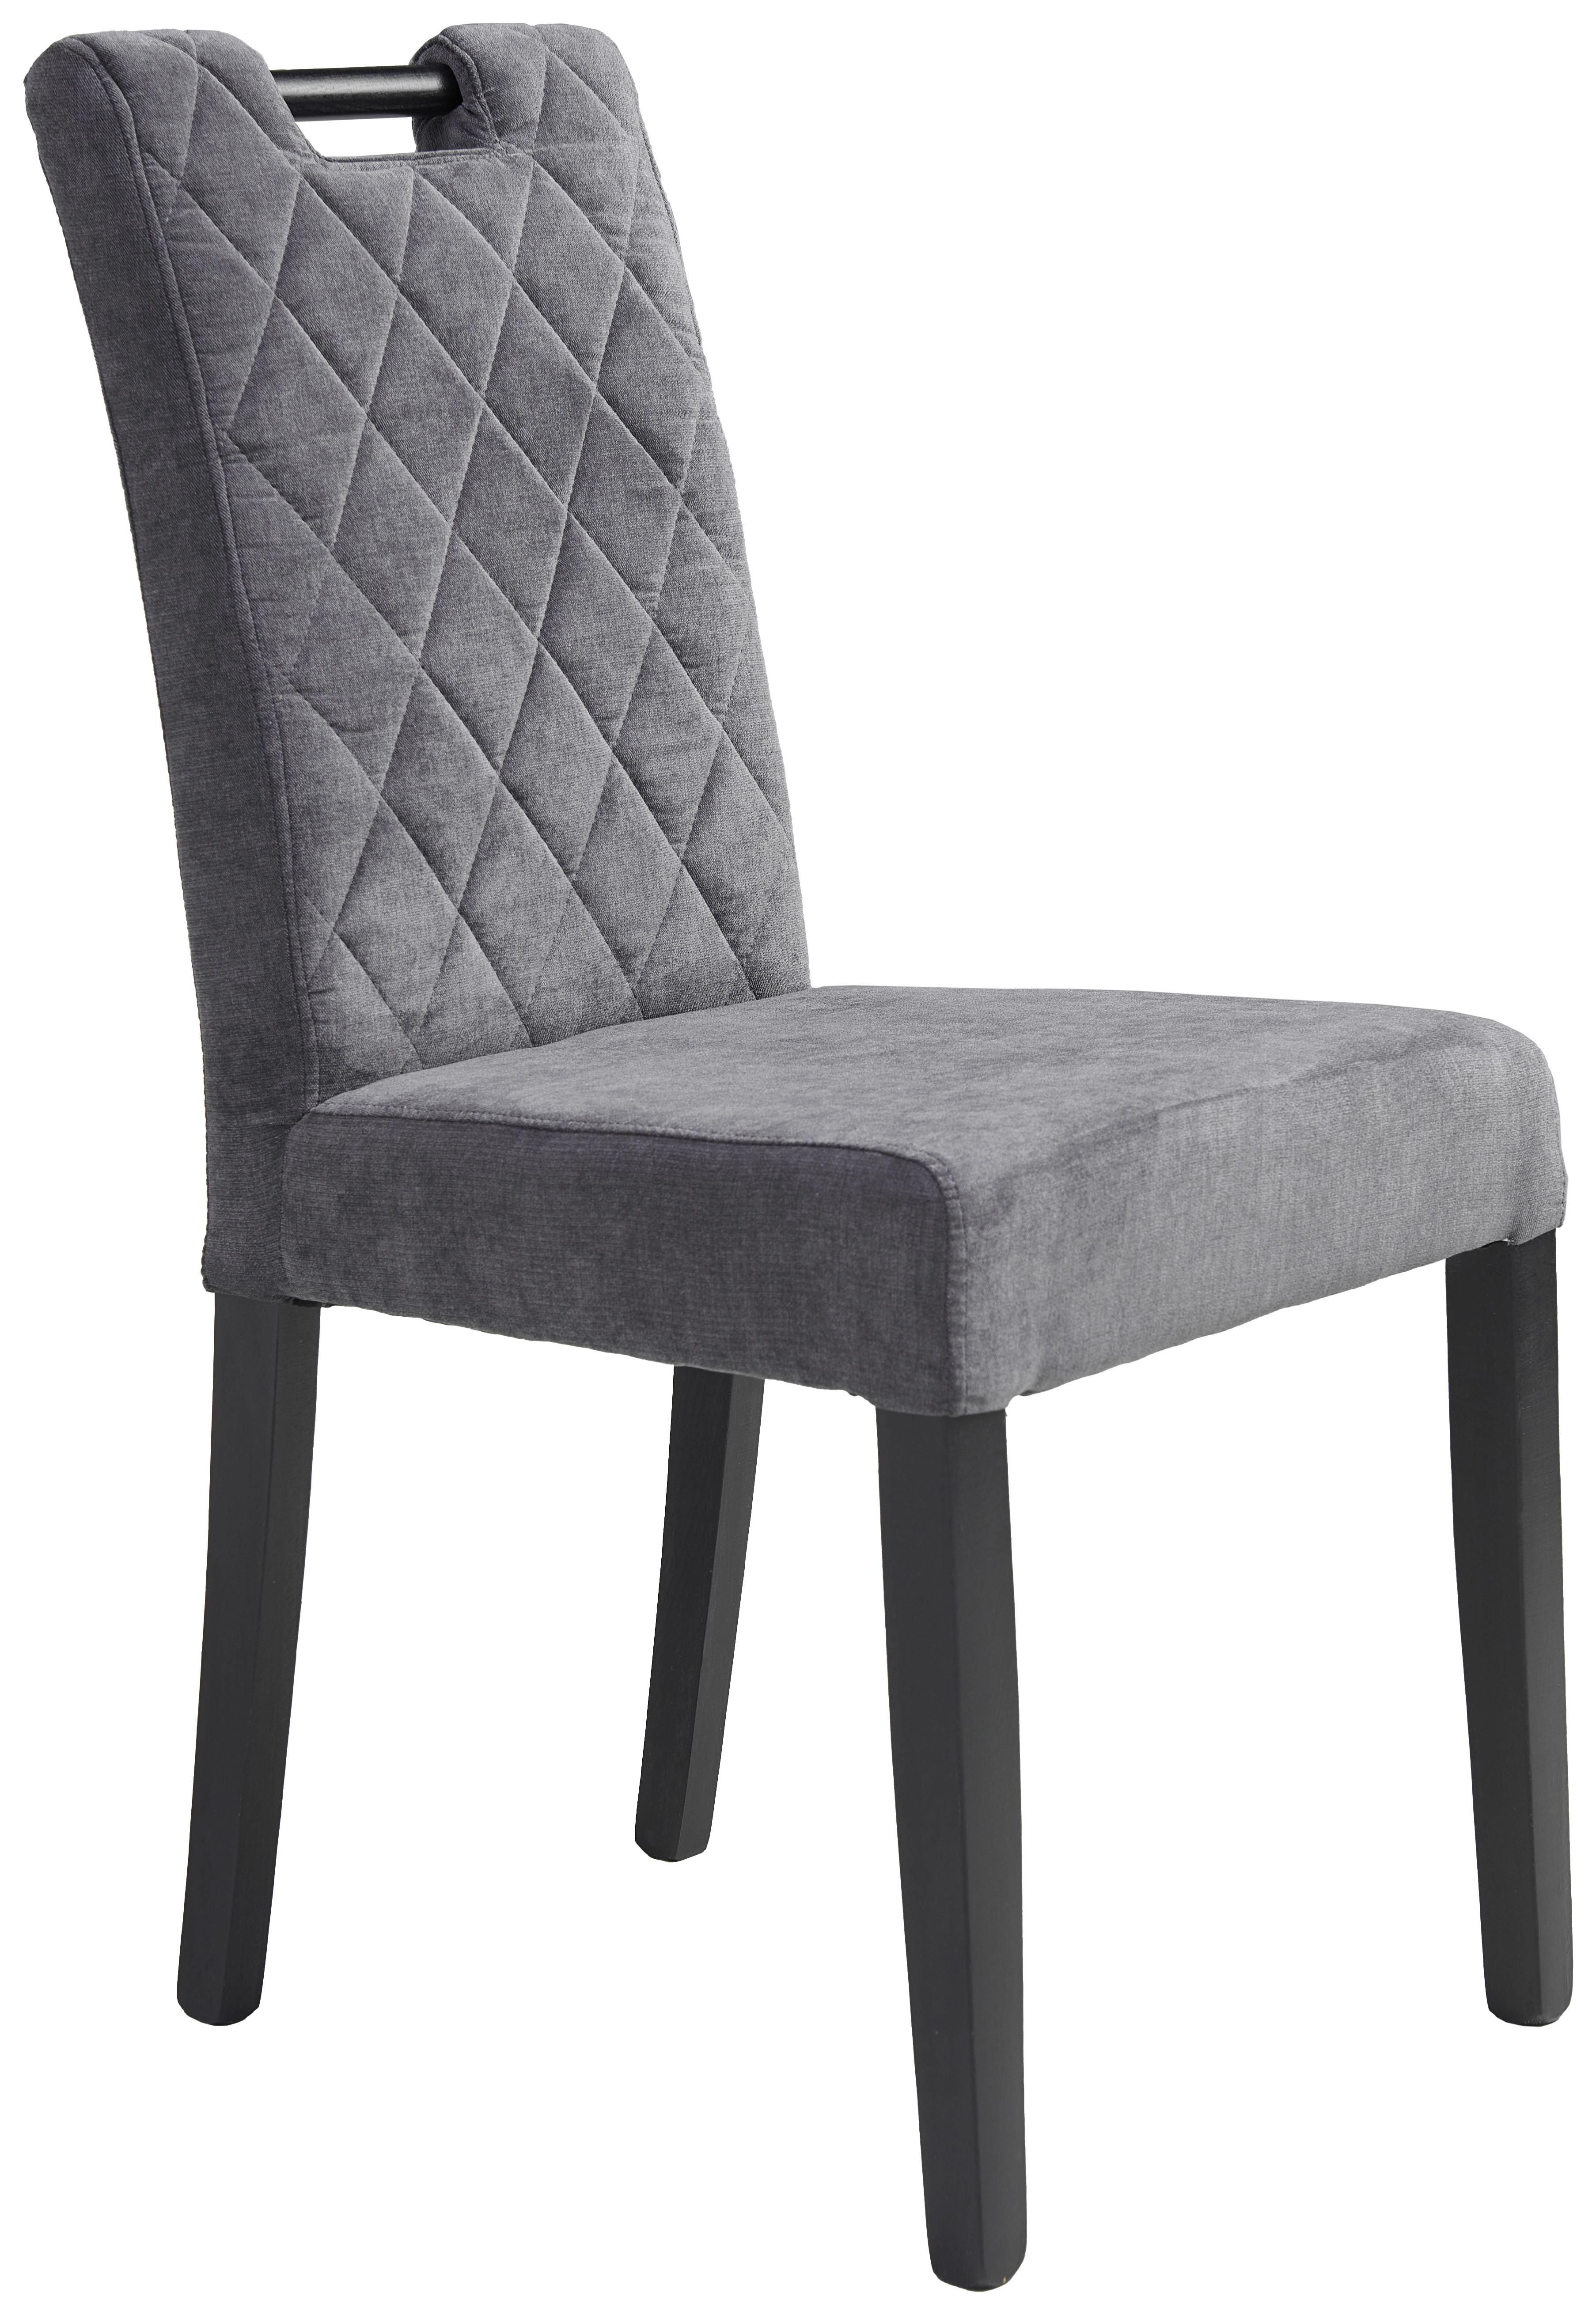 Čtyřnohá Židle Simon - tmavě šedá, Konvenční, dřevo/textil (46/93/57cm)